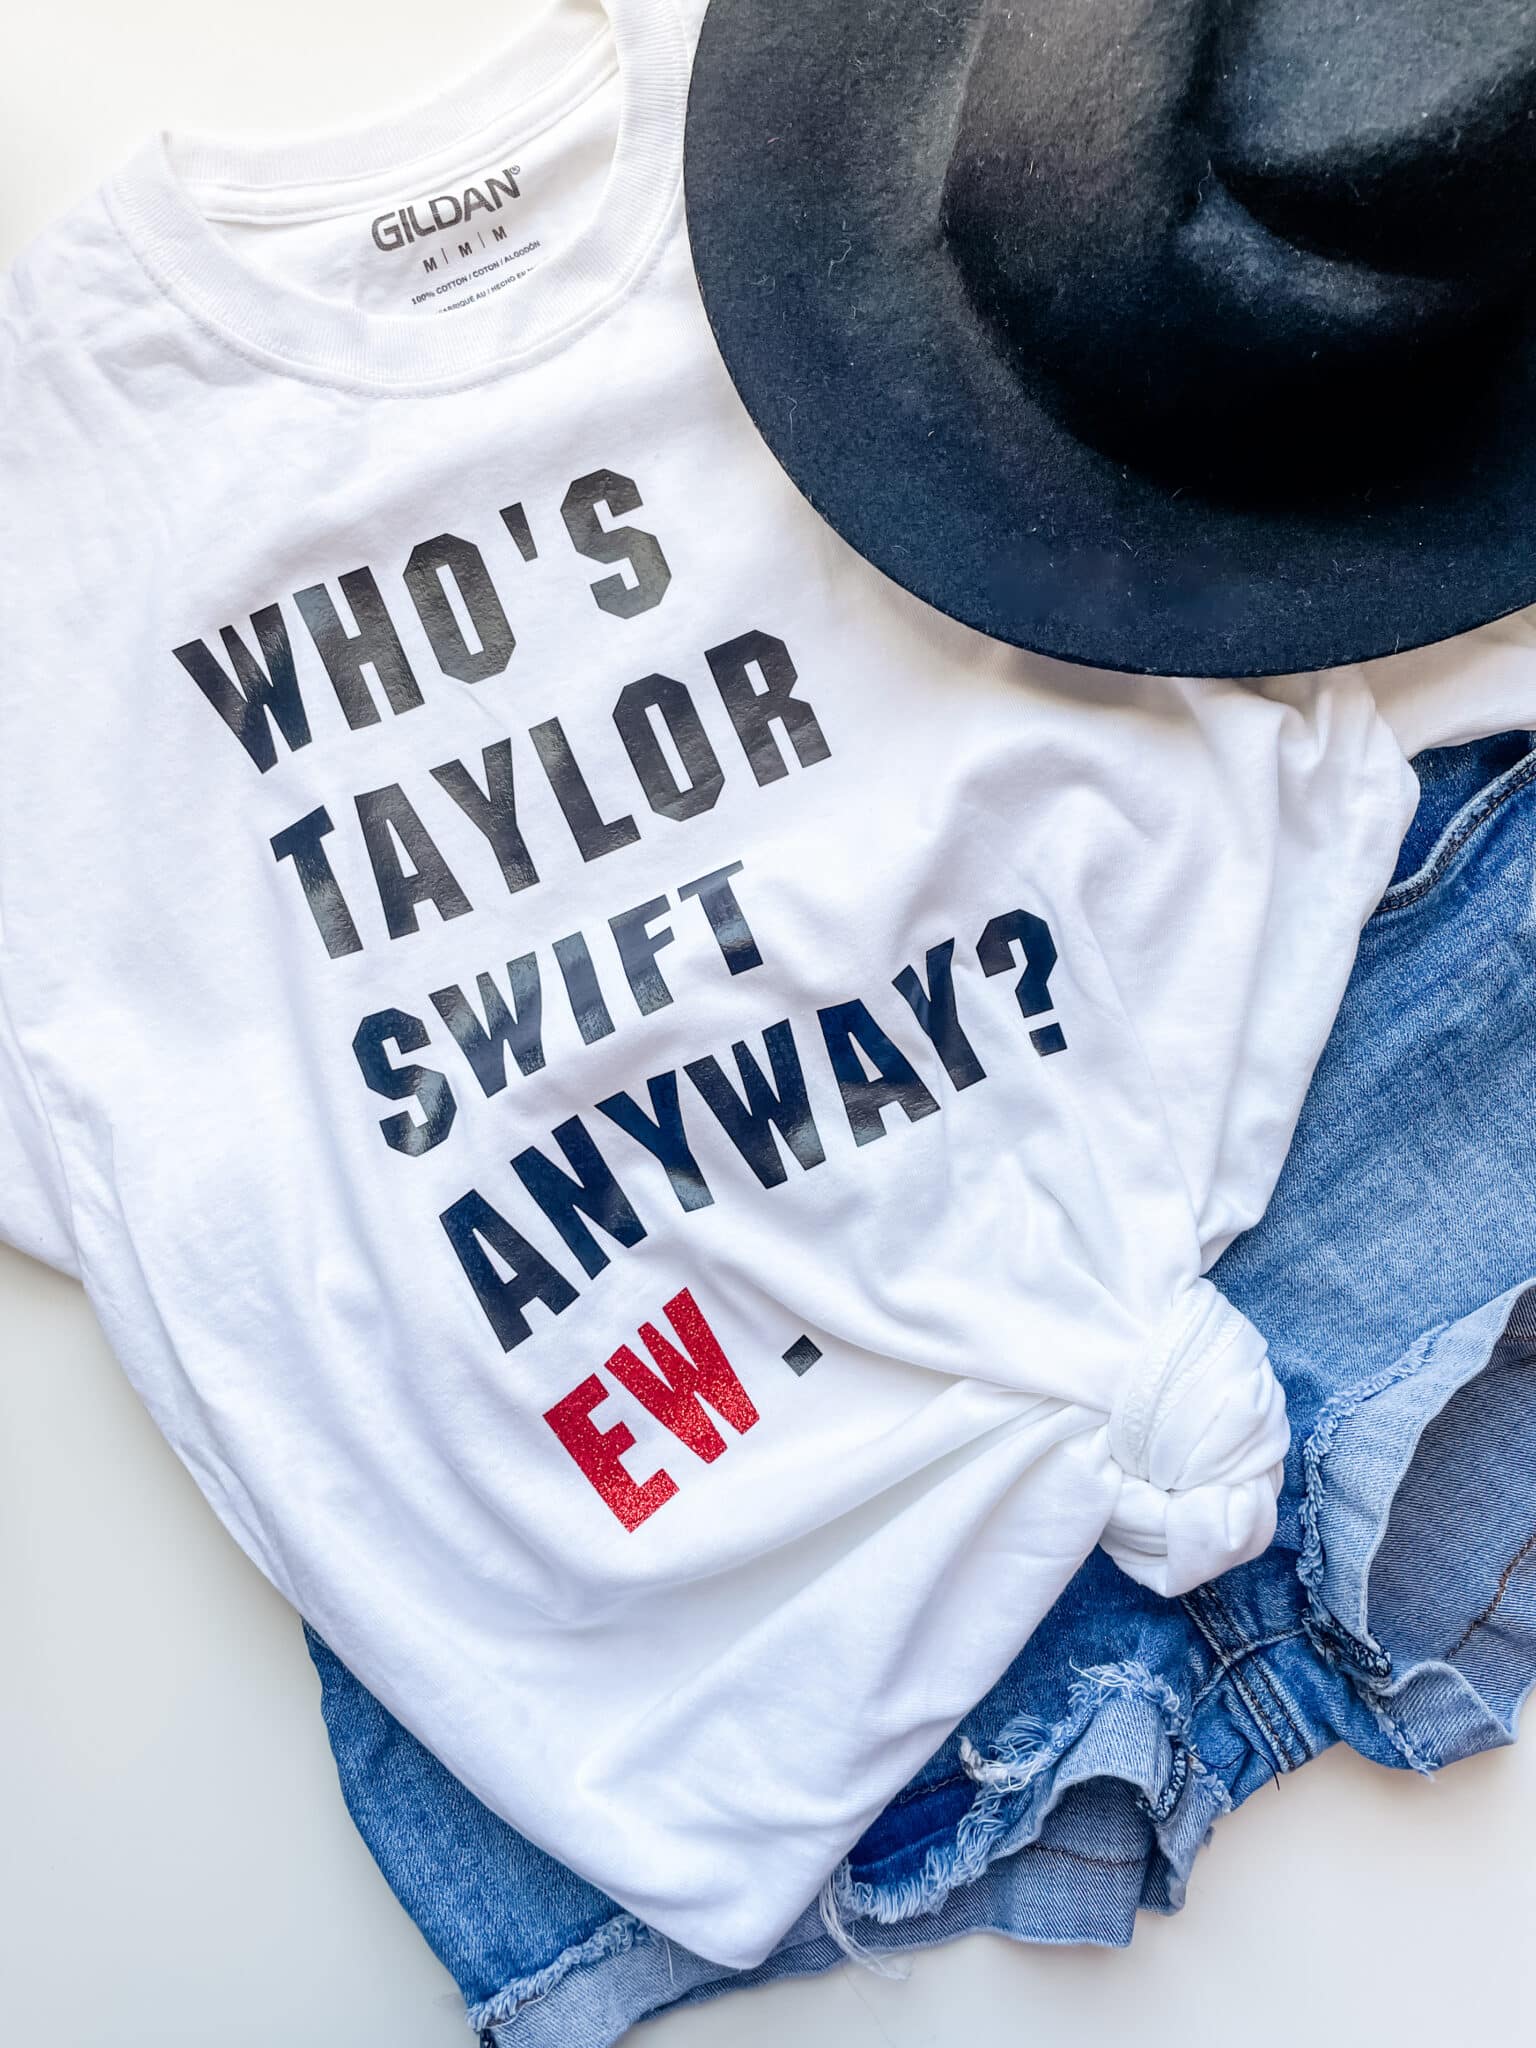 DIY Taylor Swift Eras Tour T-Shirt